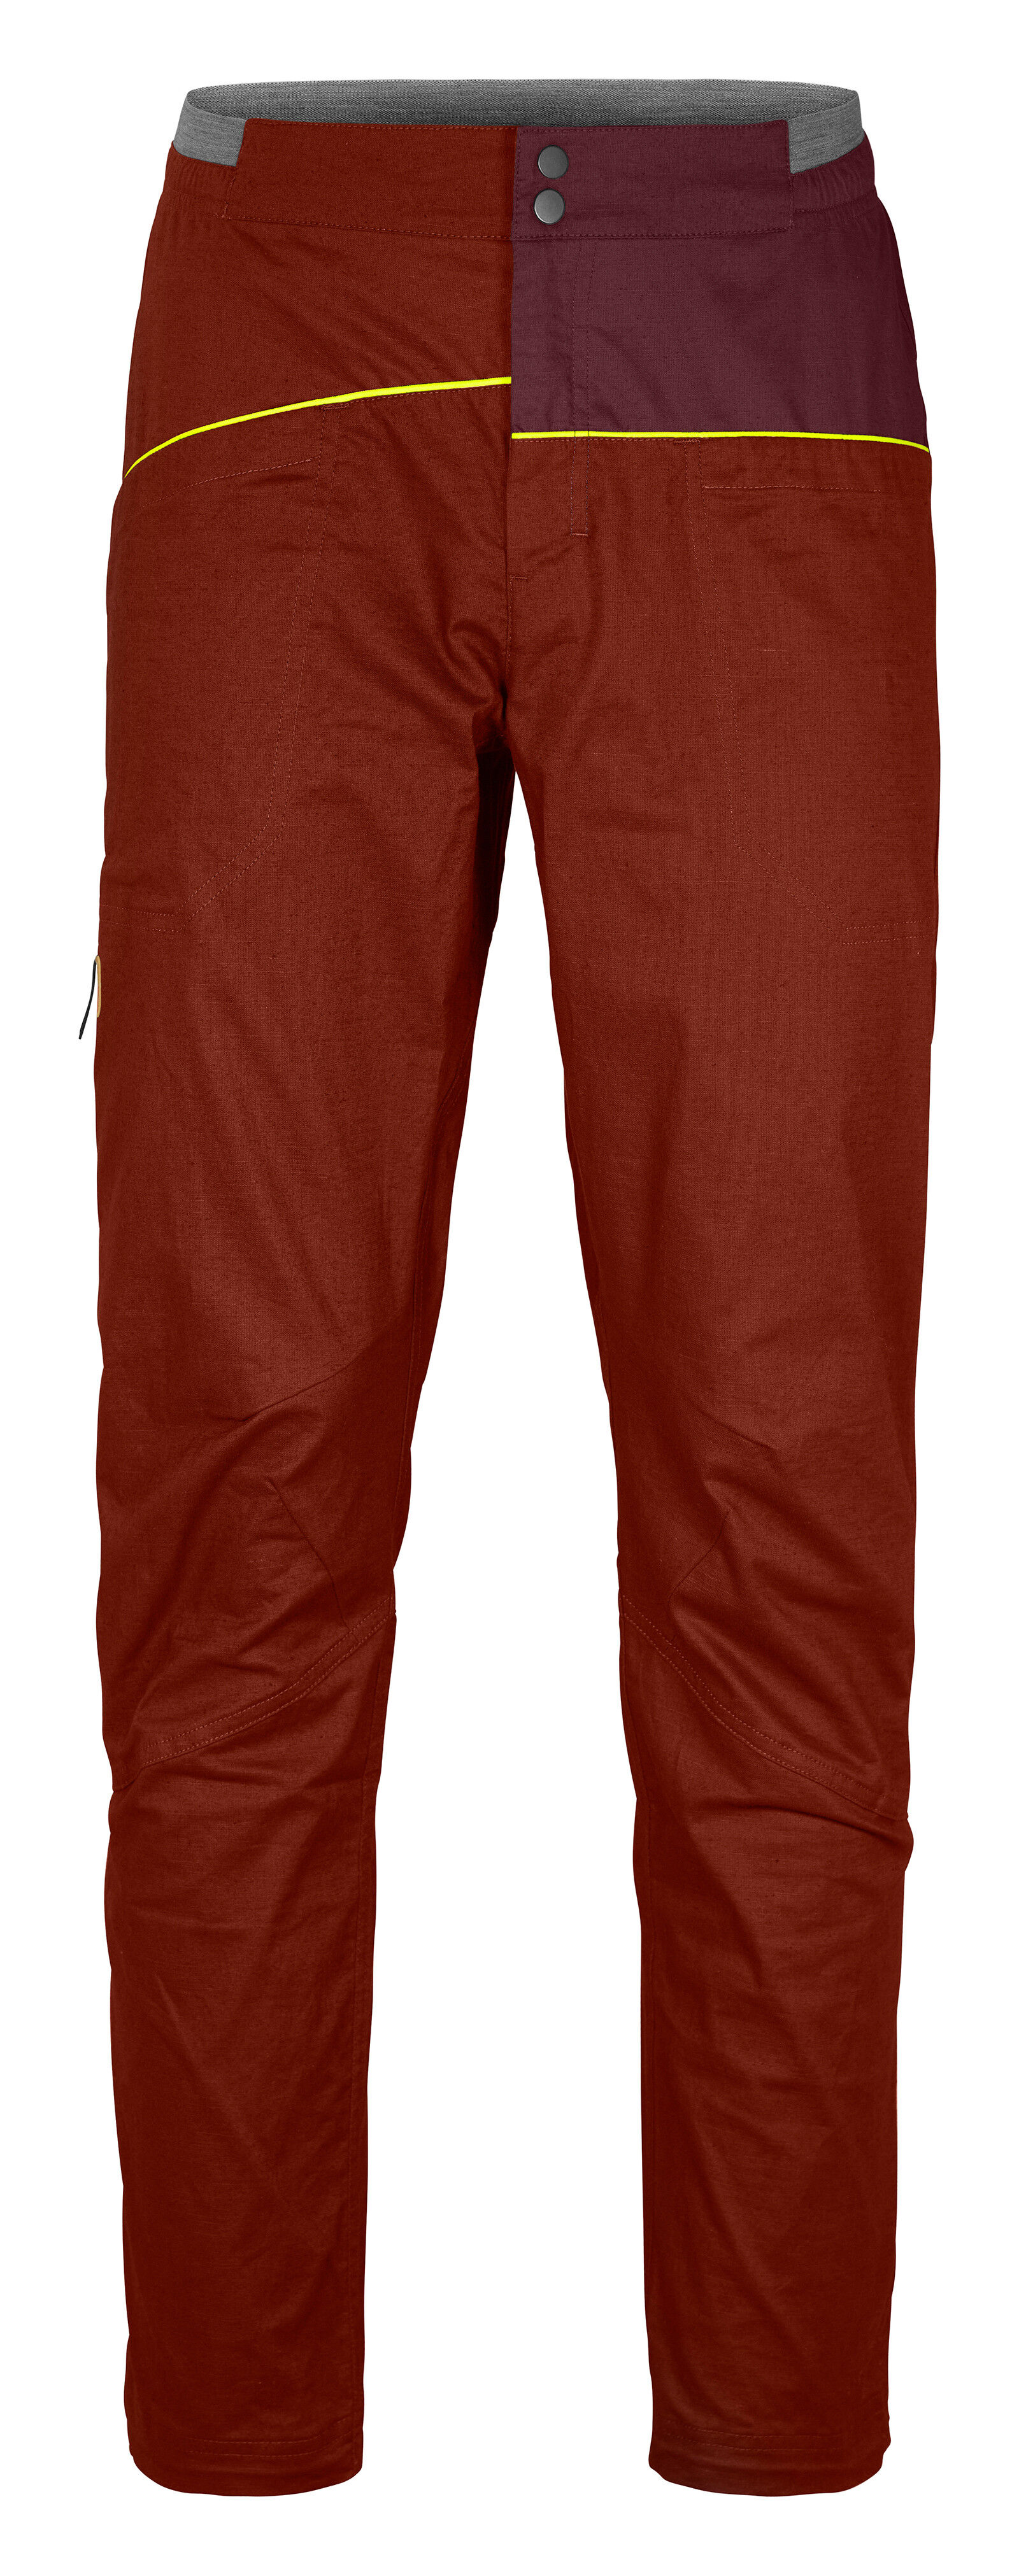 Ortovox Valbon Pants - Climbing trousers - Men's